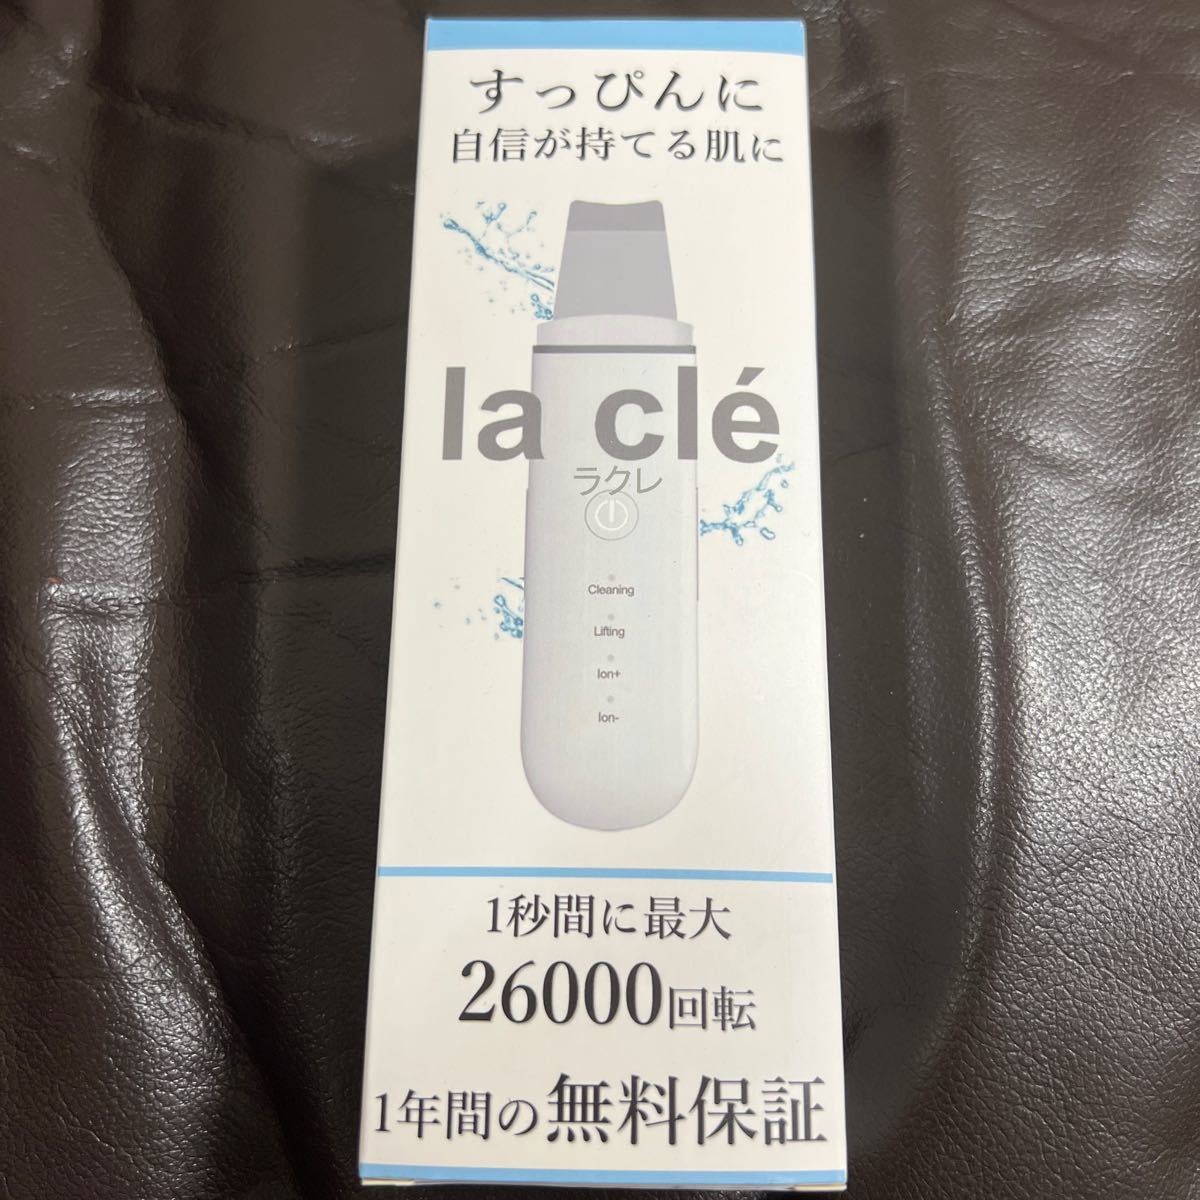 la cle 日本ブランド ウォーターピーリング 軽量 IPX5防水